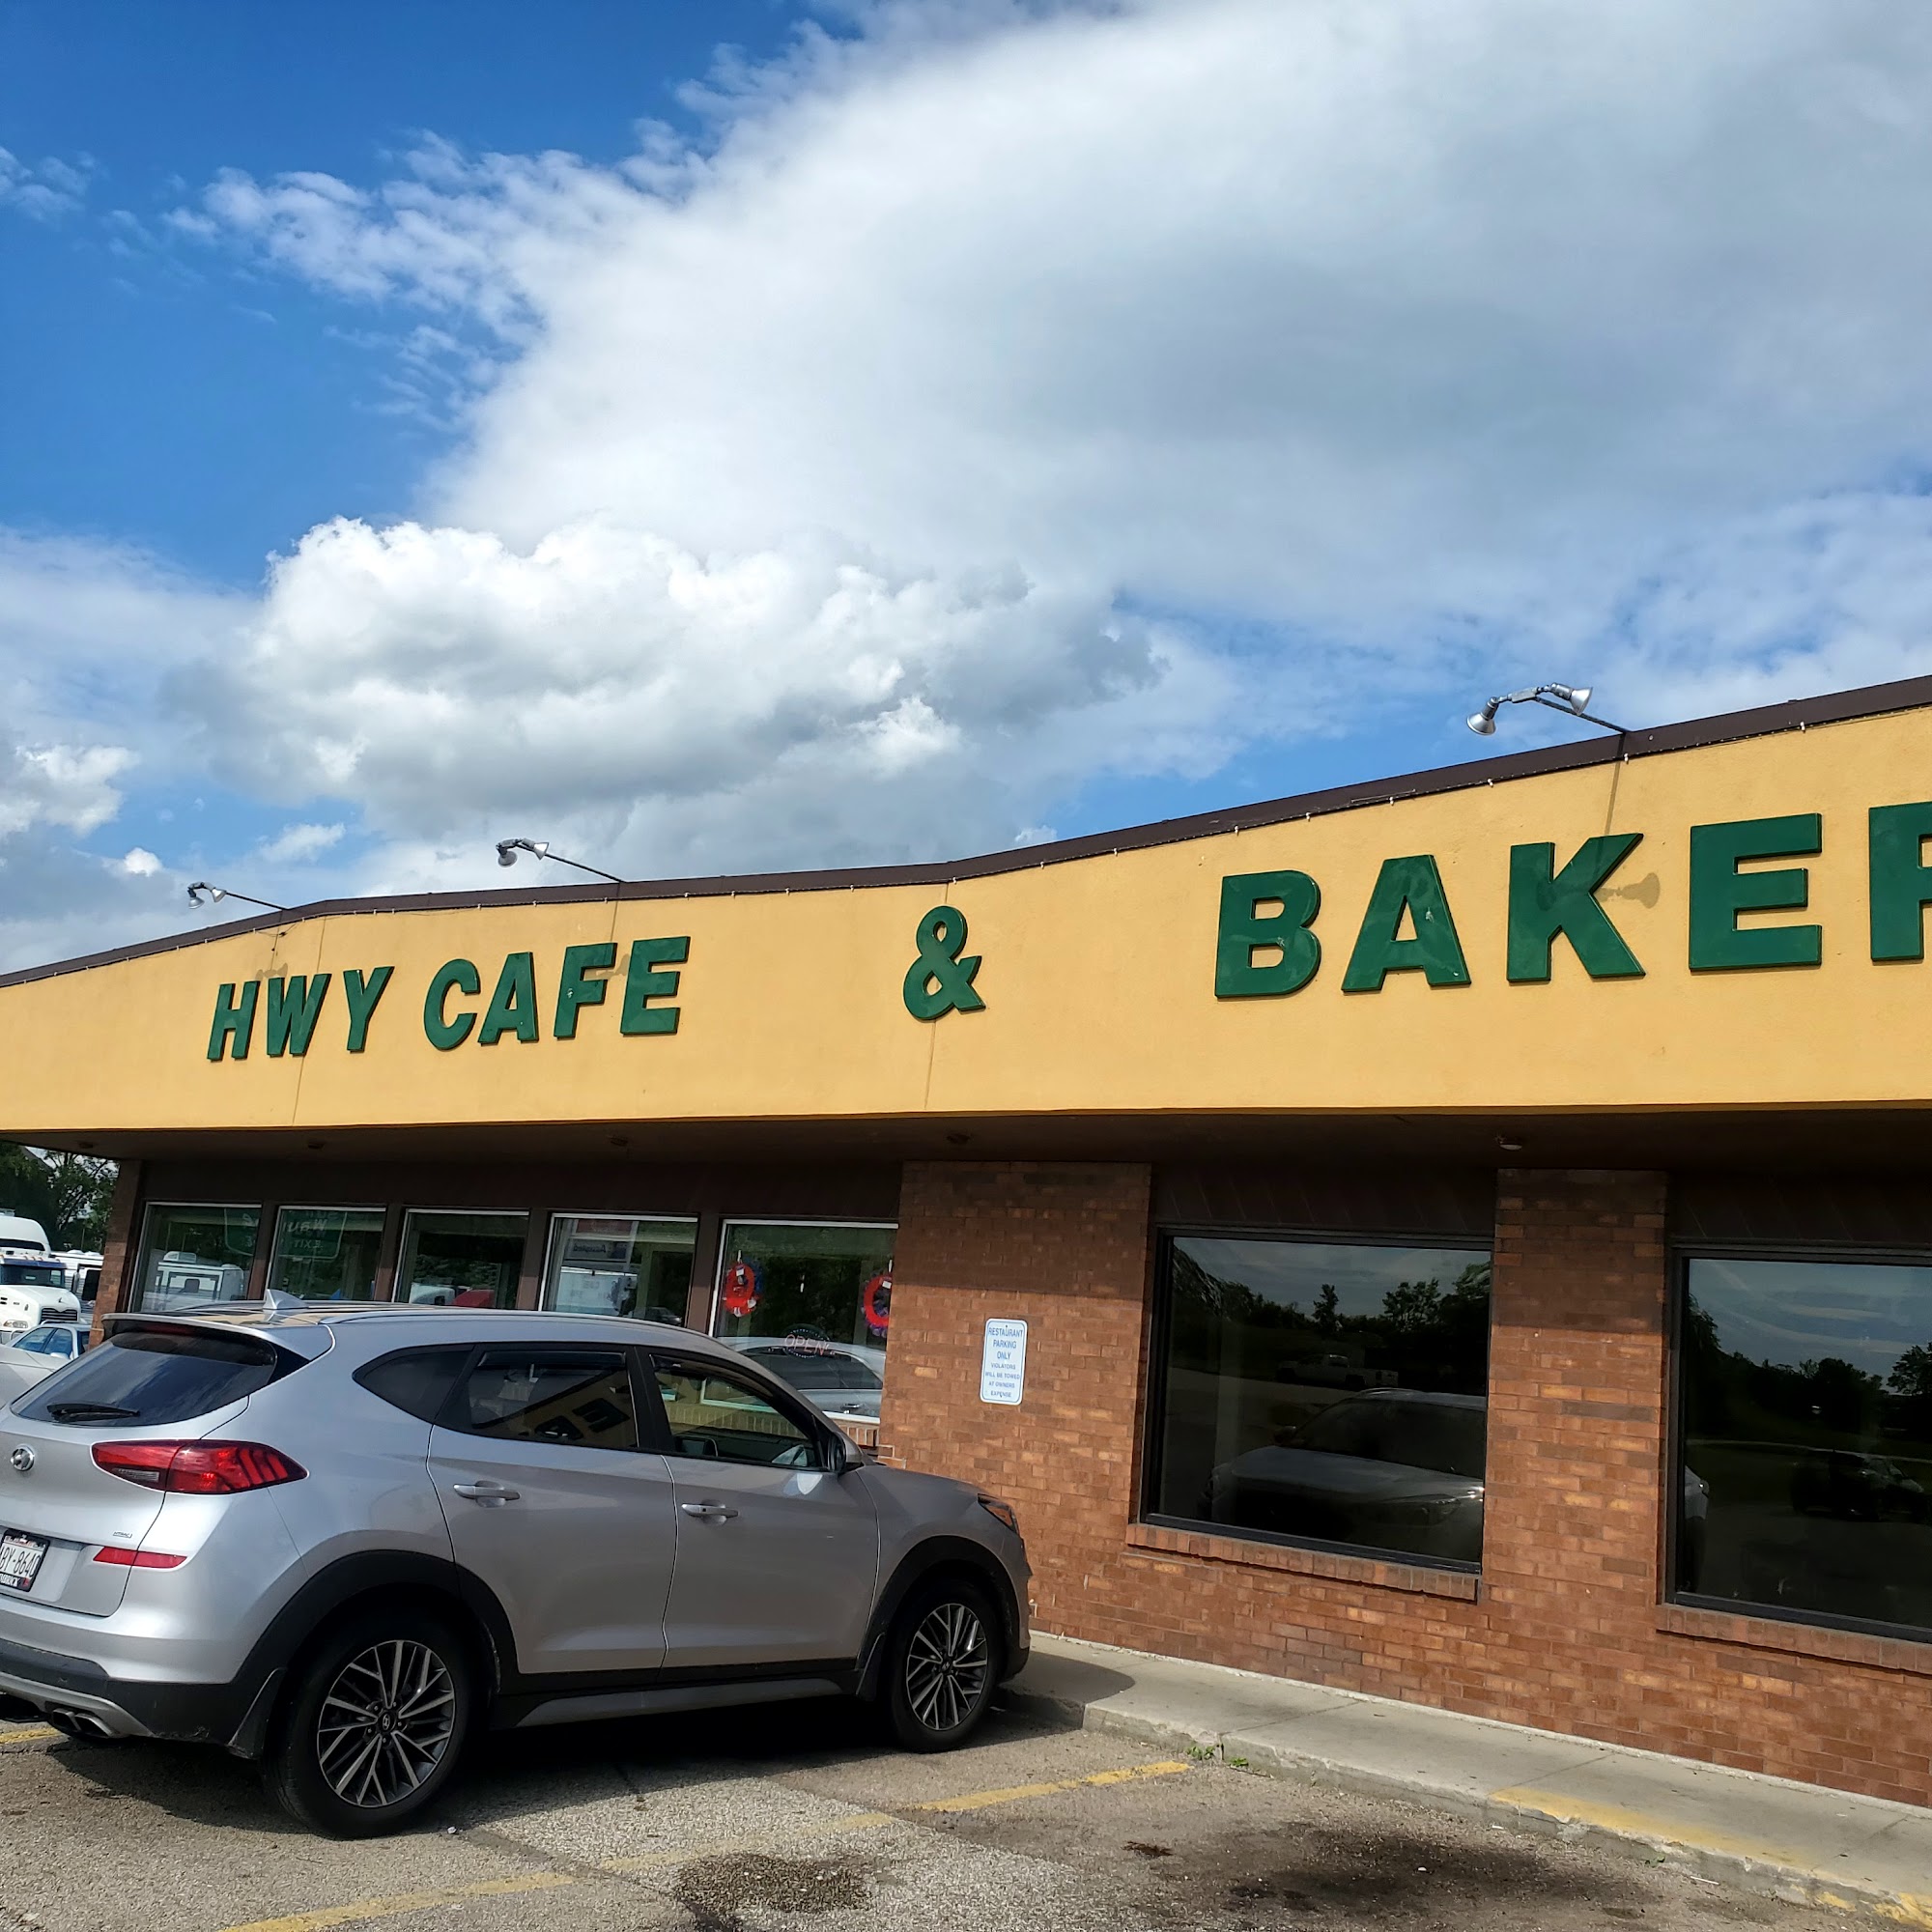 Highway Cafe